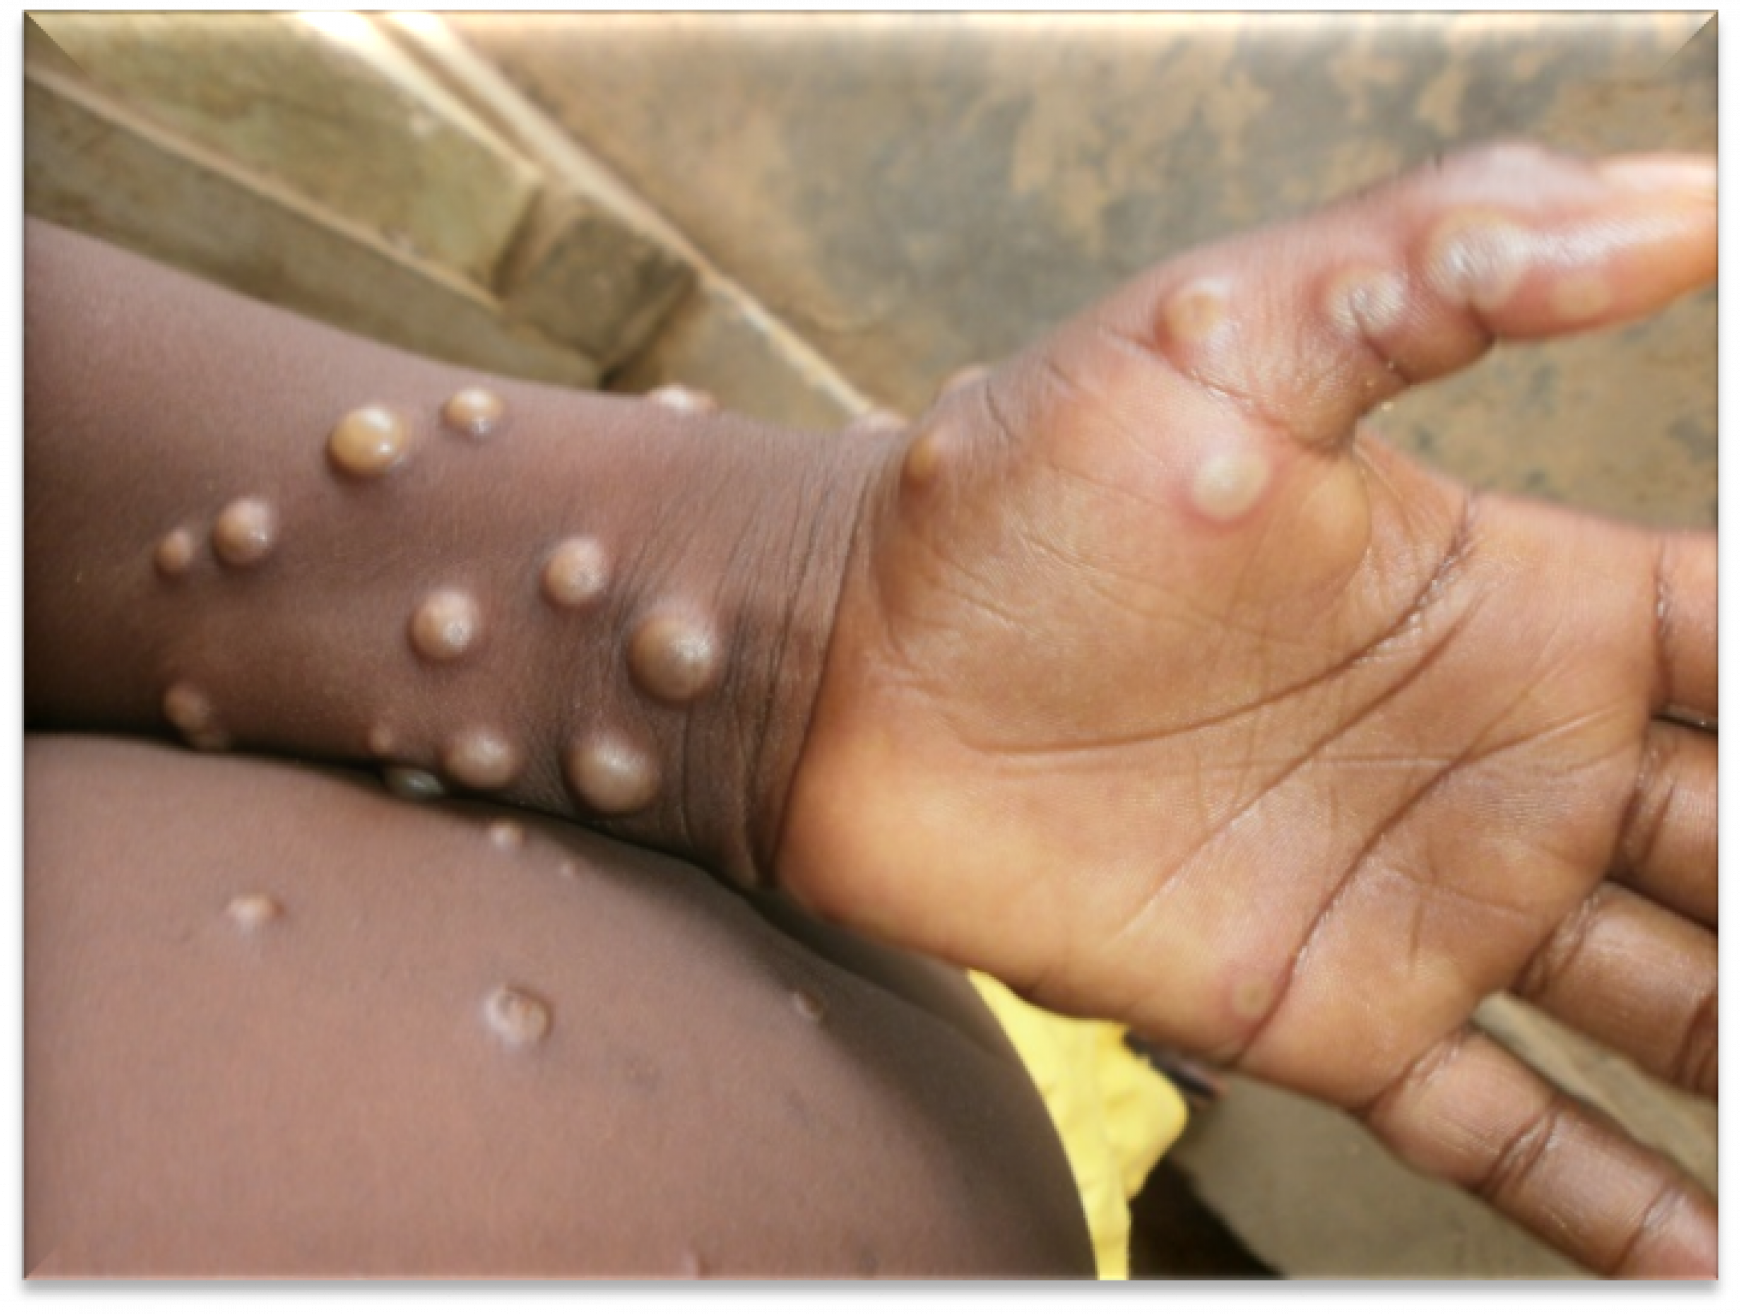 Monkeypox rashes